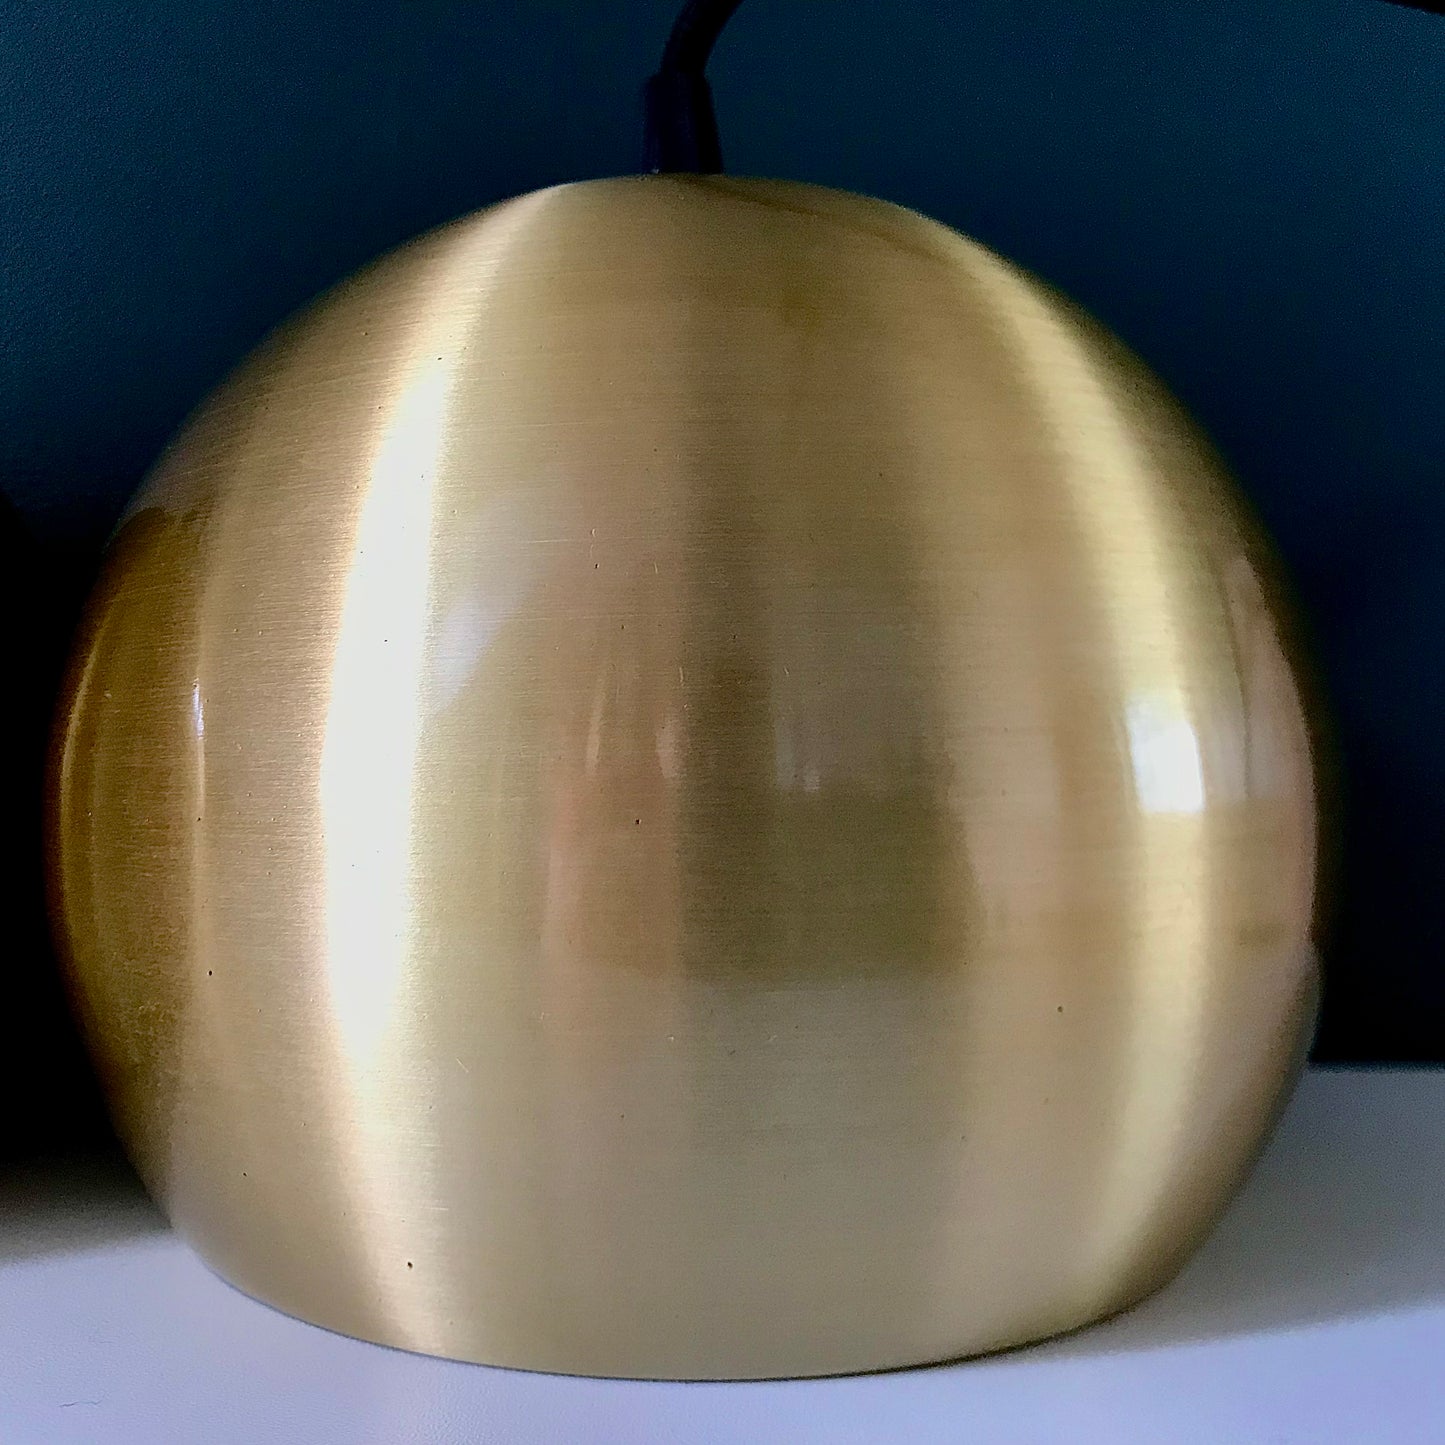 Frandsen Ball Gold Danish Pendant Lamp Retro Ceiling Light Scandinavian